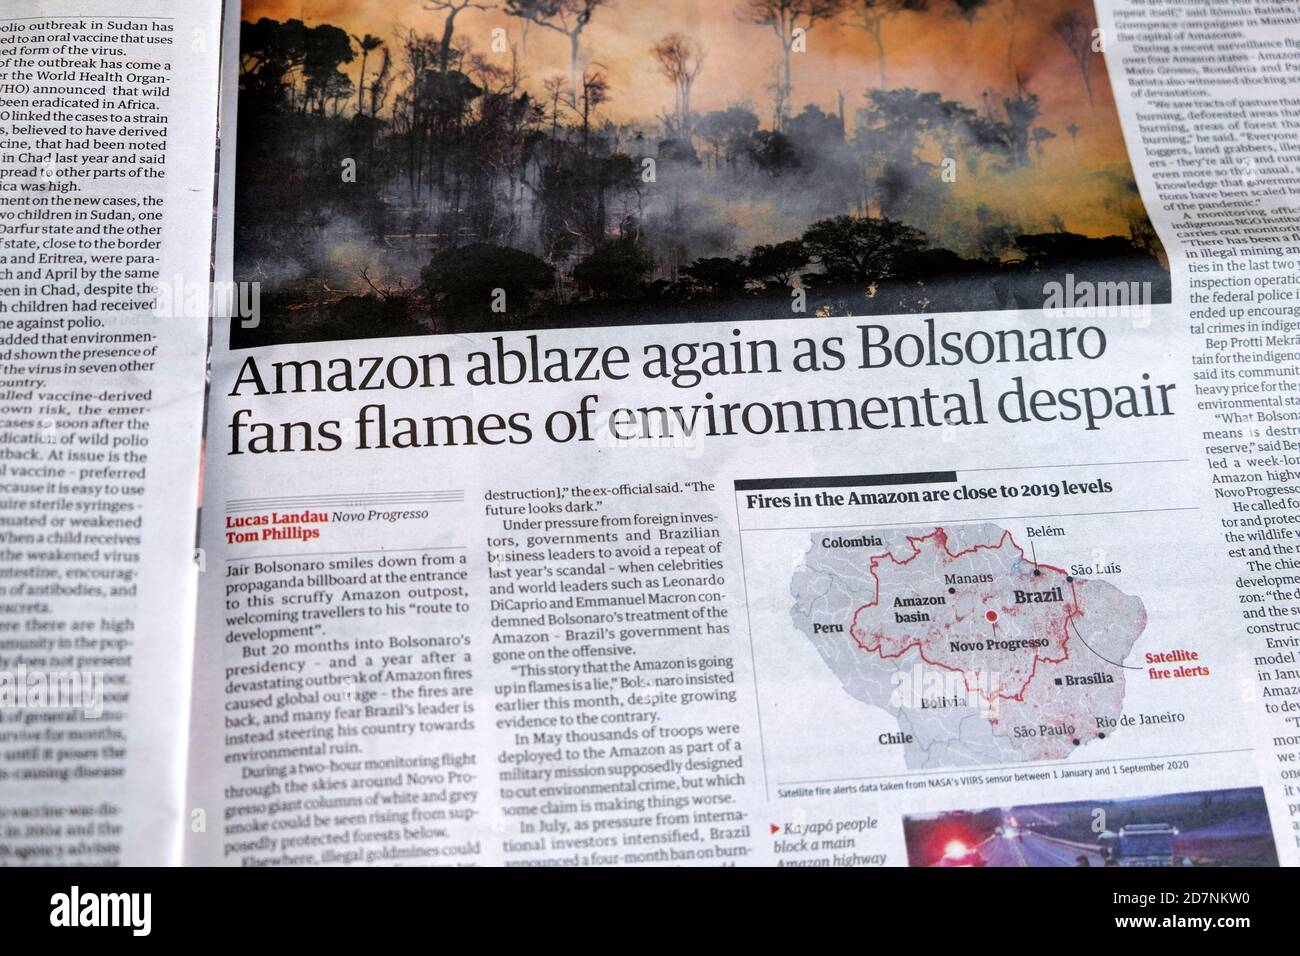 Amazon si abbatti di nuovo come Bolsonaro tifosi fiamme di disperazione  ambientale" Titolo del giornale Guardian all'interno dell'articolo Londra  UK Foto stock - Alamy